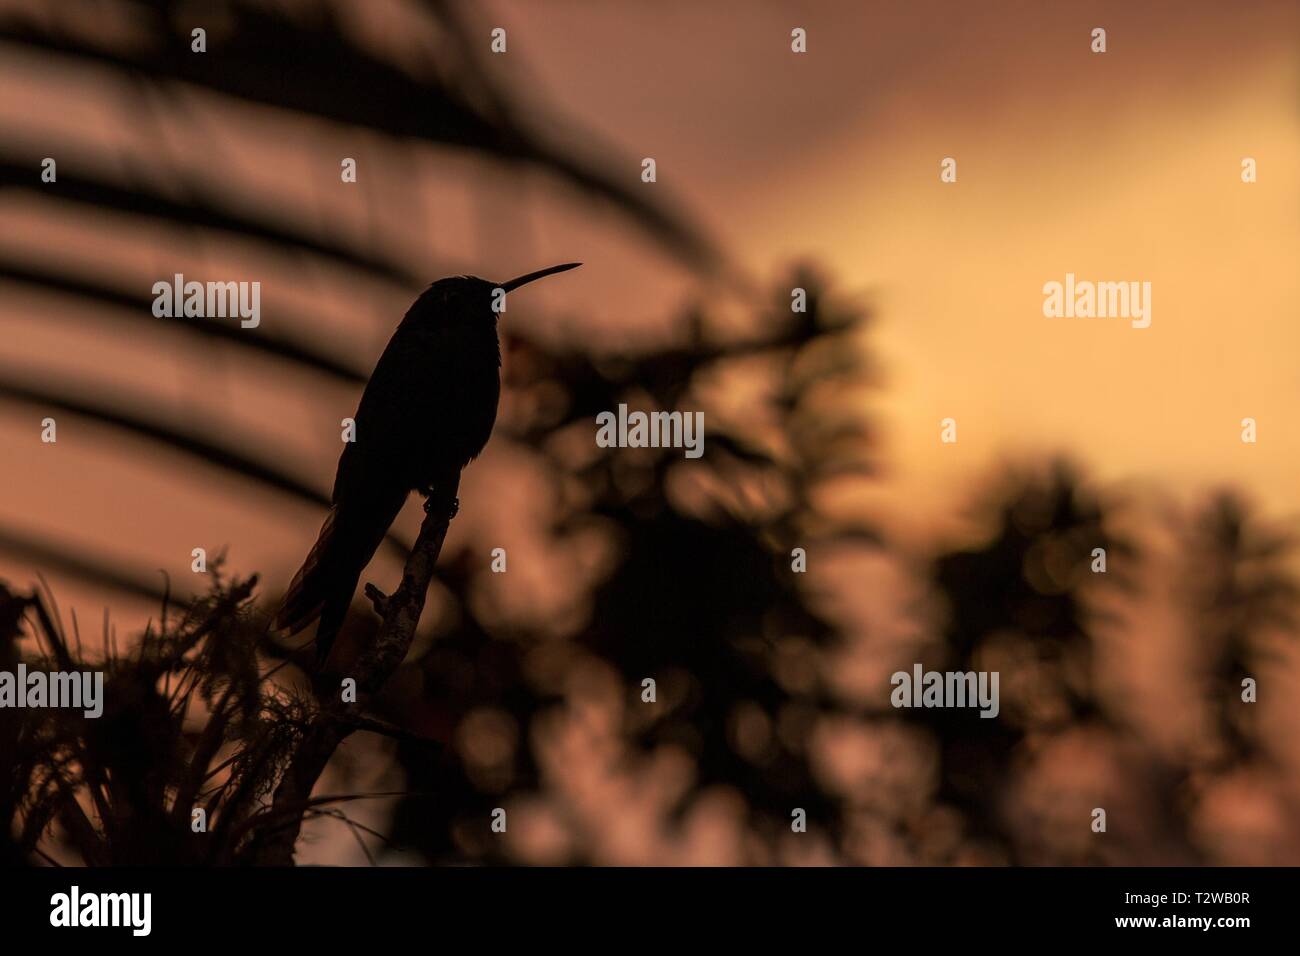 Verde viola-orecchio seduta sul ramo, hummingbird da foresta pluviale, Colombia, bird perchin al tramonto nel giardino,Cancella sfondo,bird silhouette isolato Foto Stock